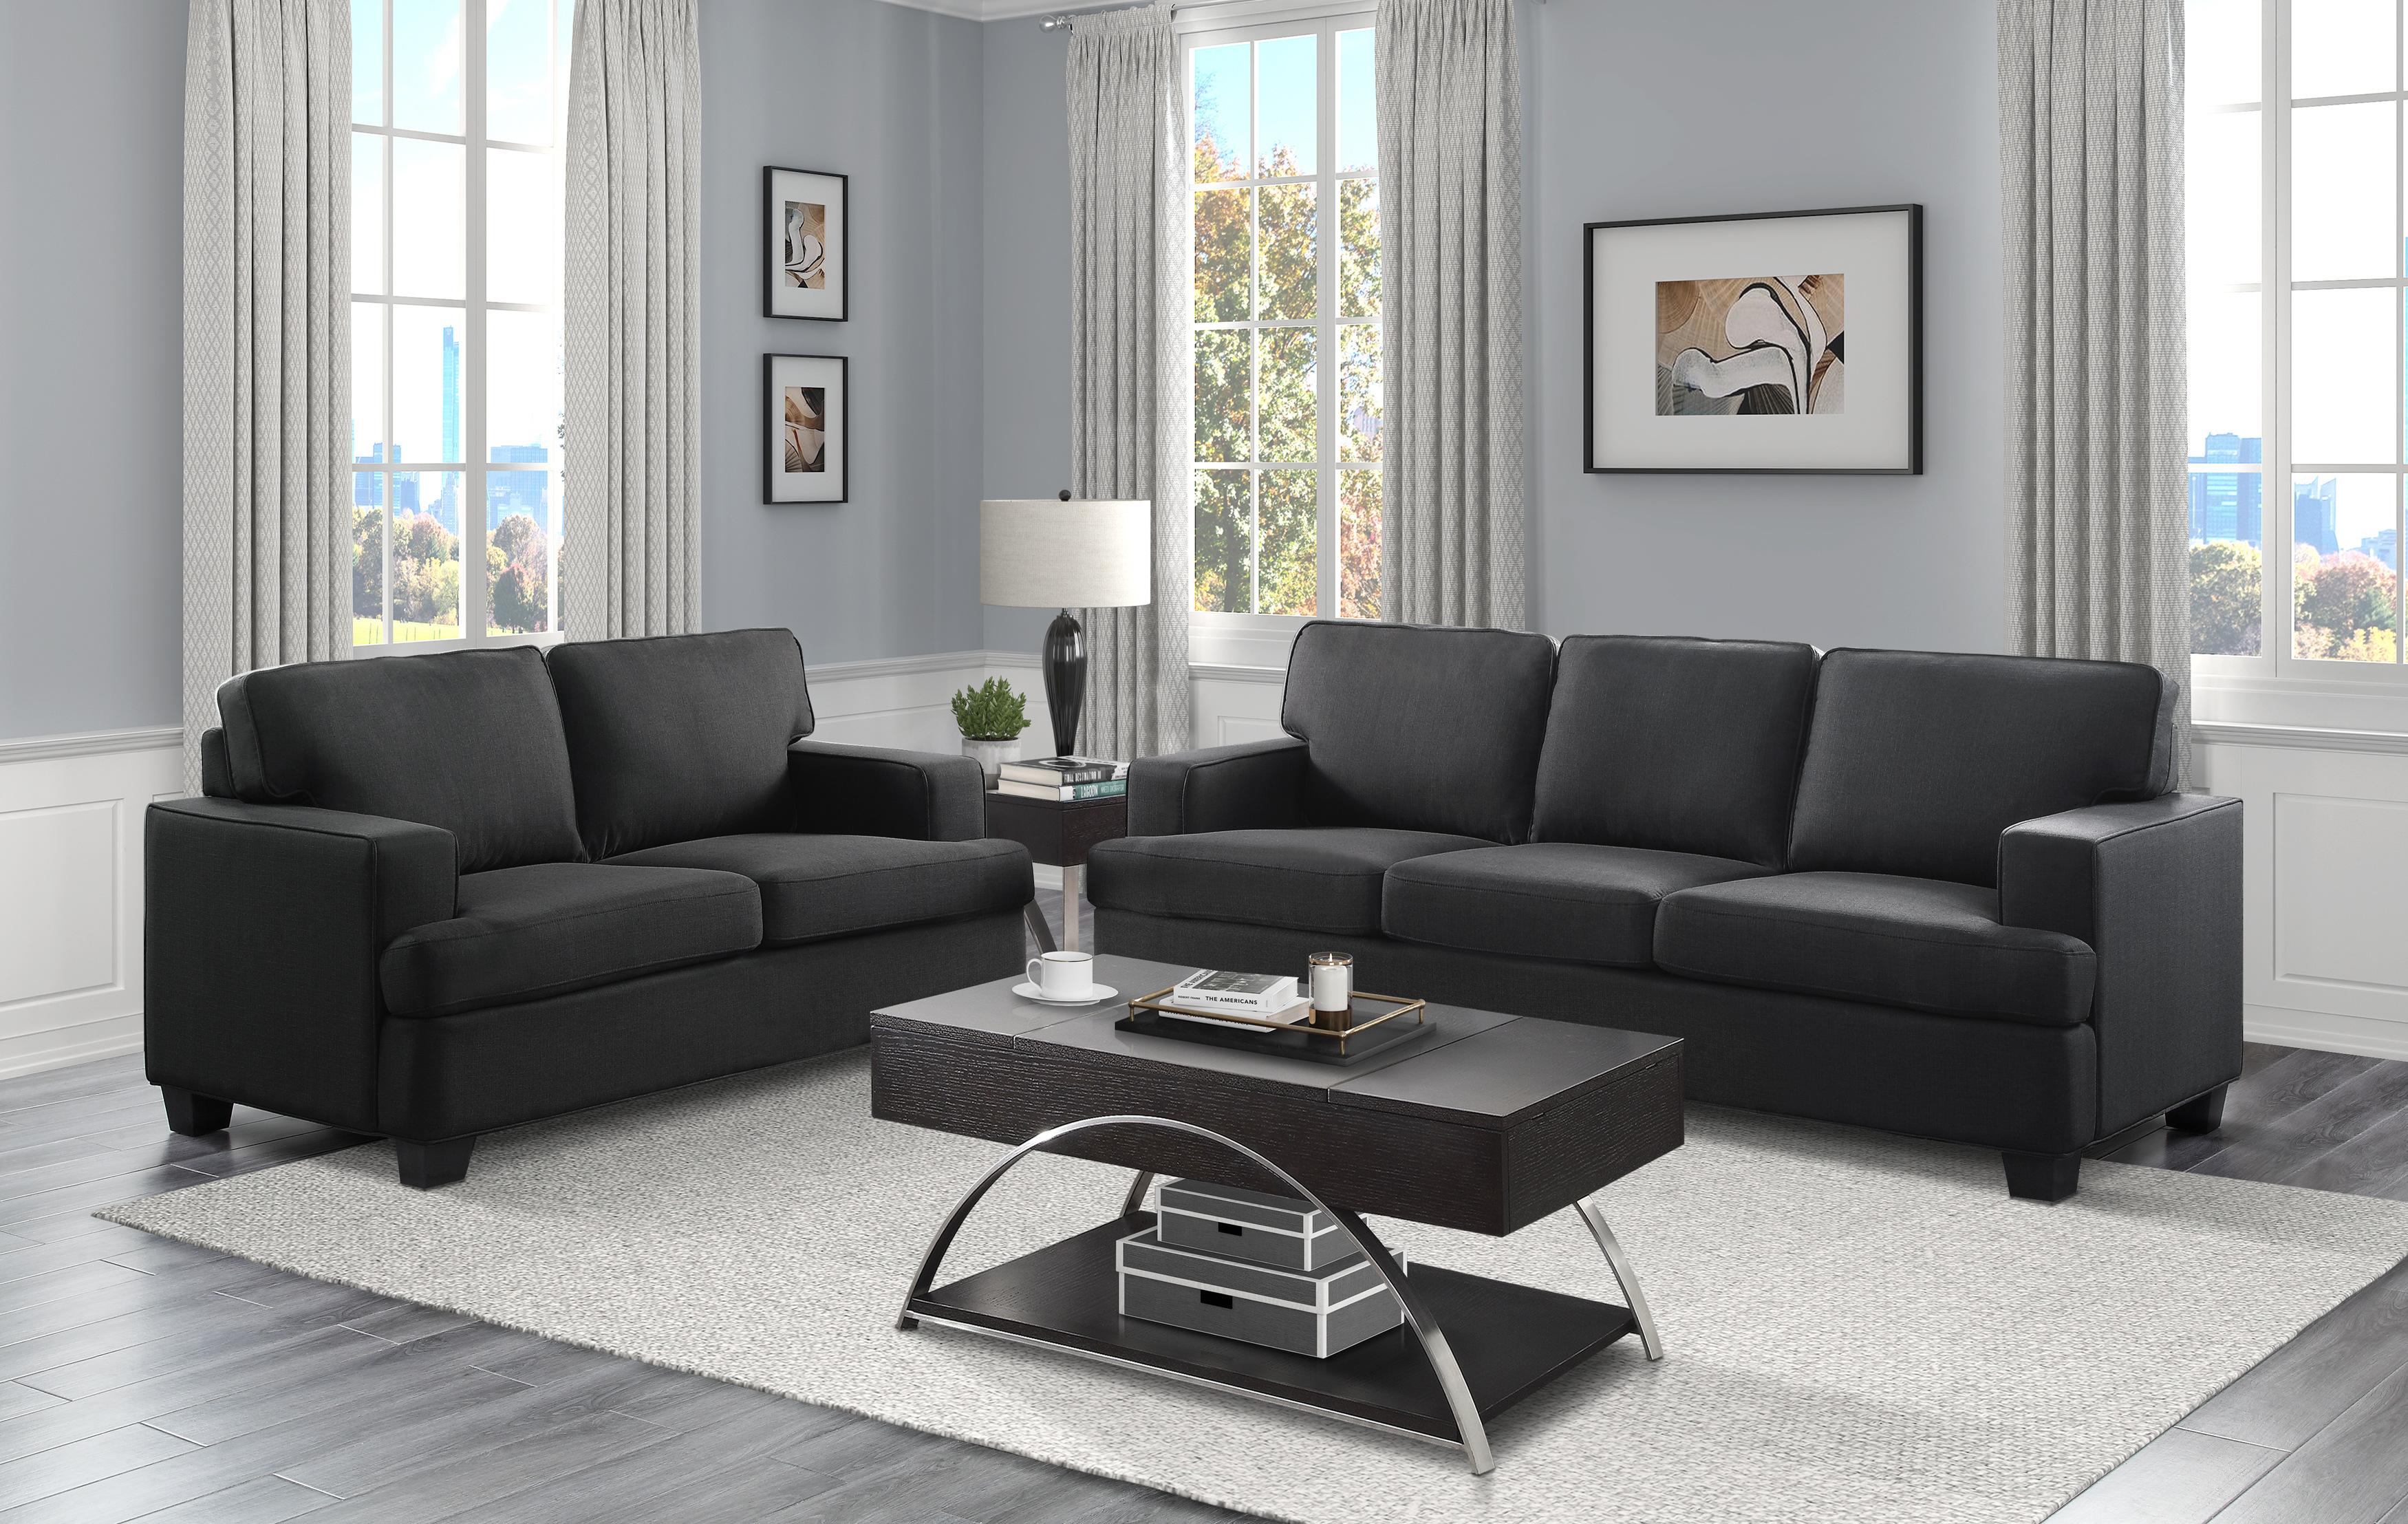 

    
Transitional Black Solid Wood Living Room Set 2pcs Homelegance 9327BK Elmont
